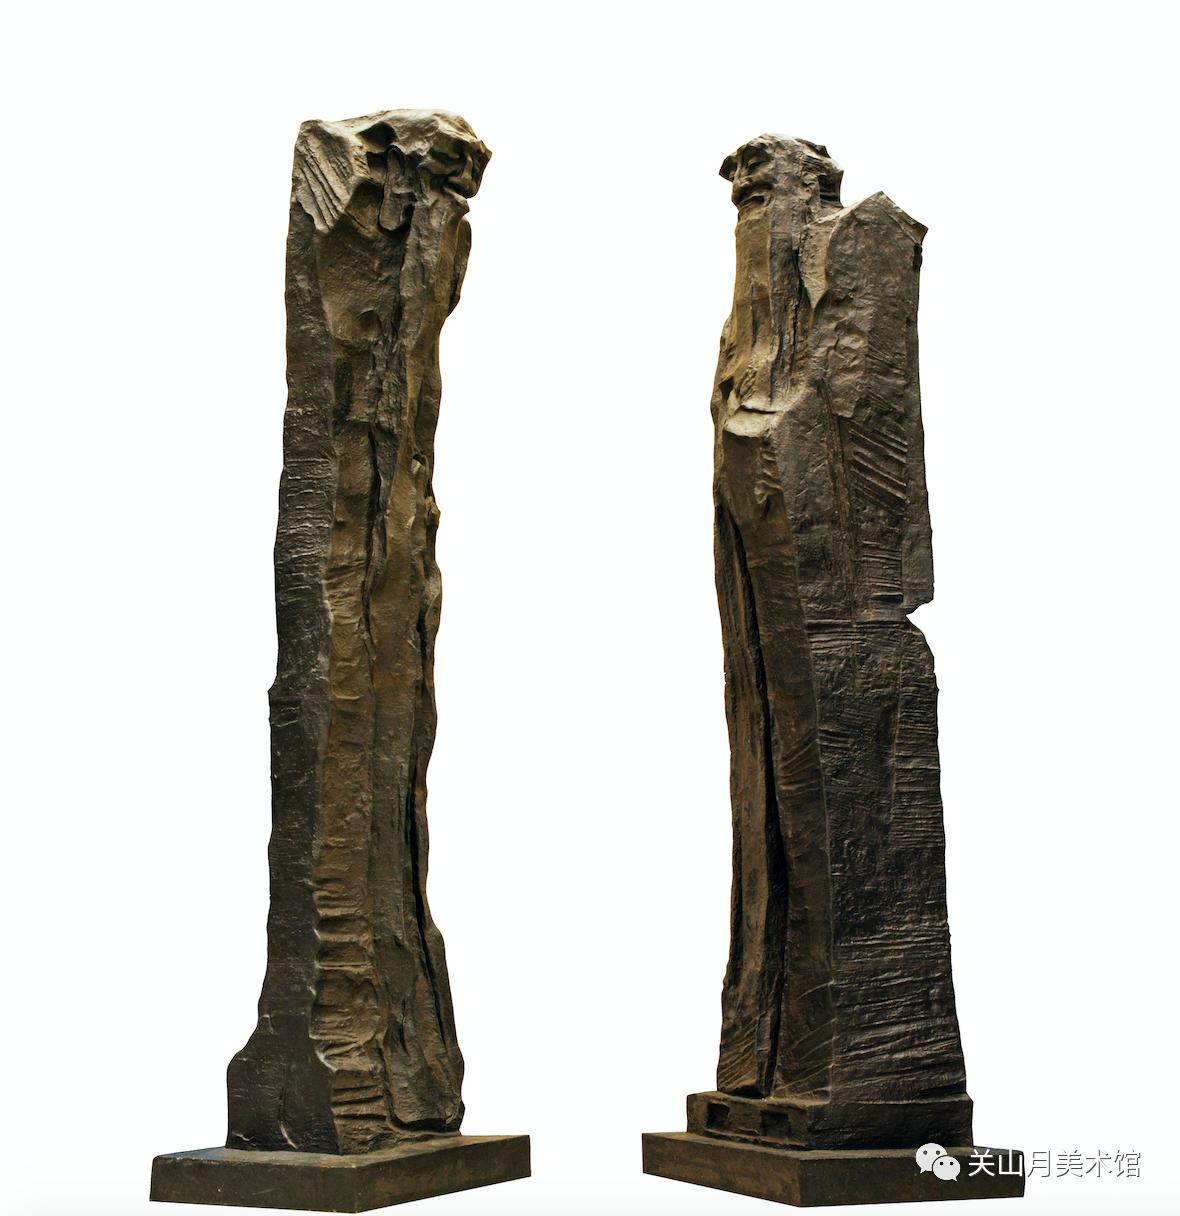 2012年吴为山是具有国际影响力的着名雕塑家,他首创中国现代写意